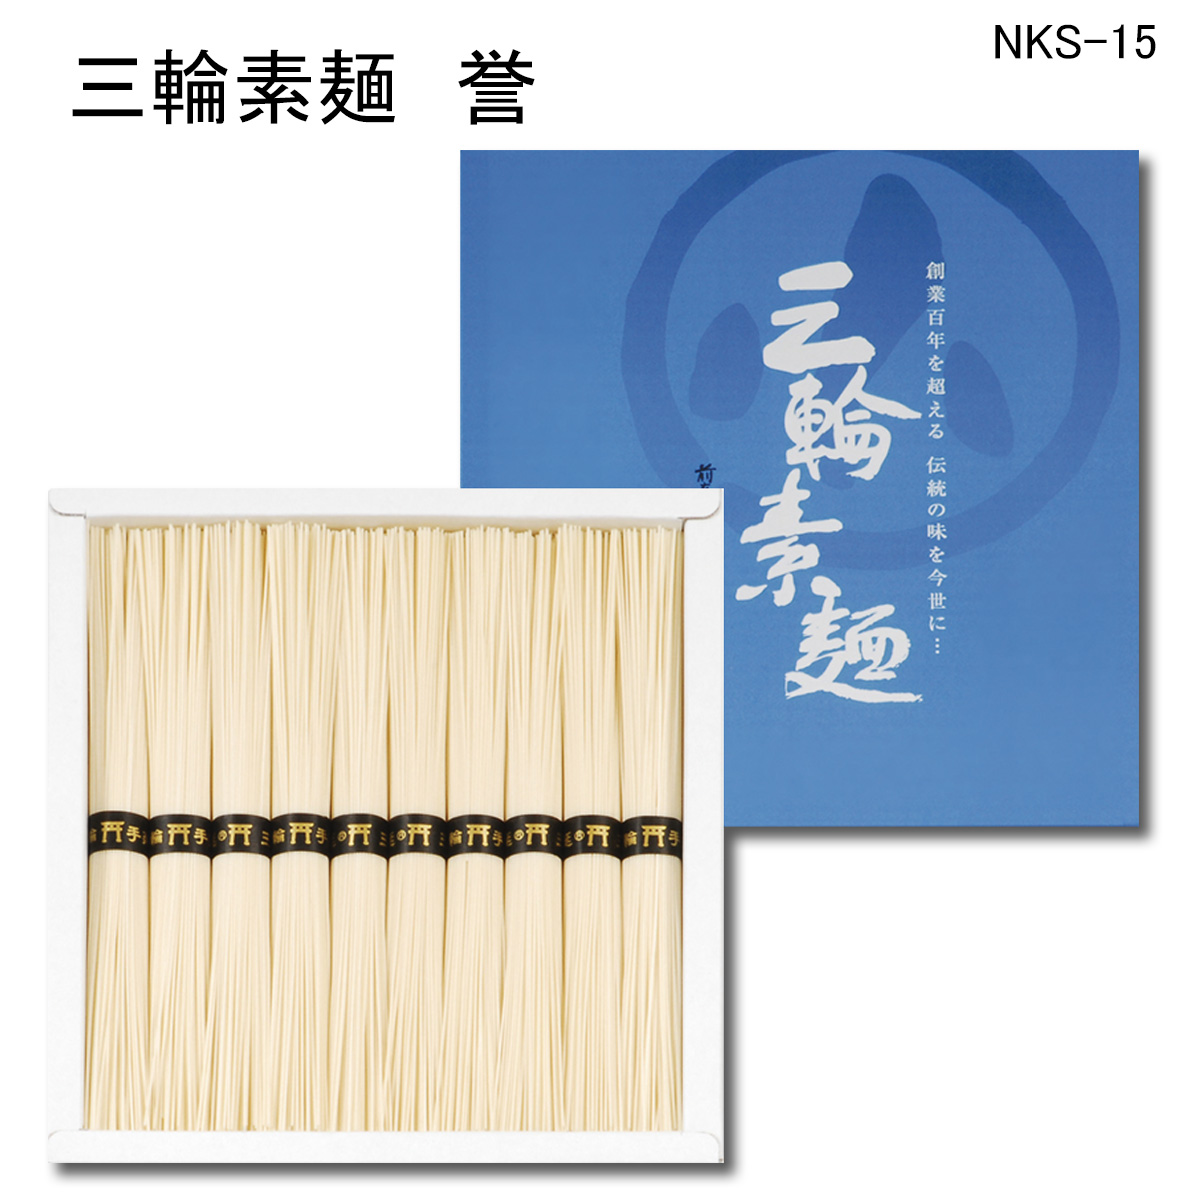 1322円 公式通販 三輪素麺 誉 T33605